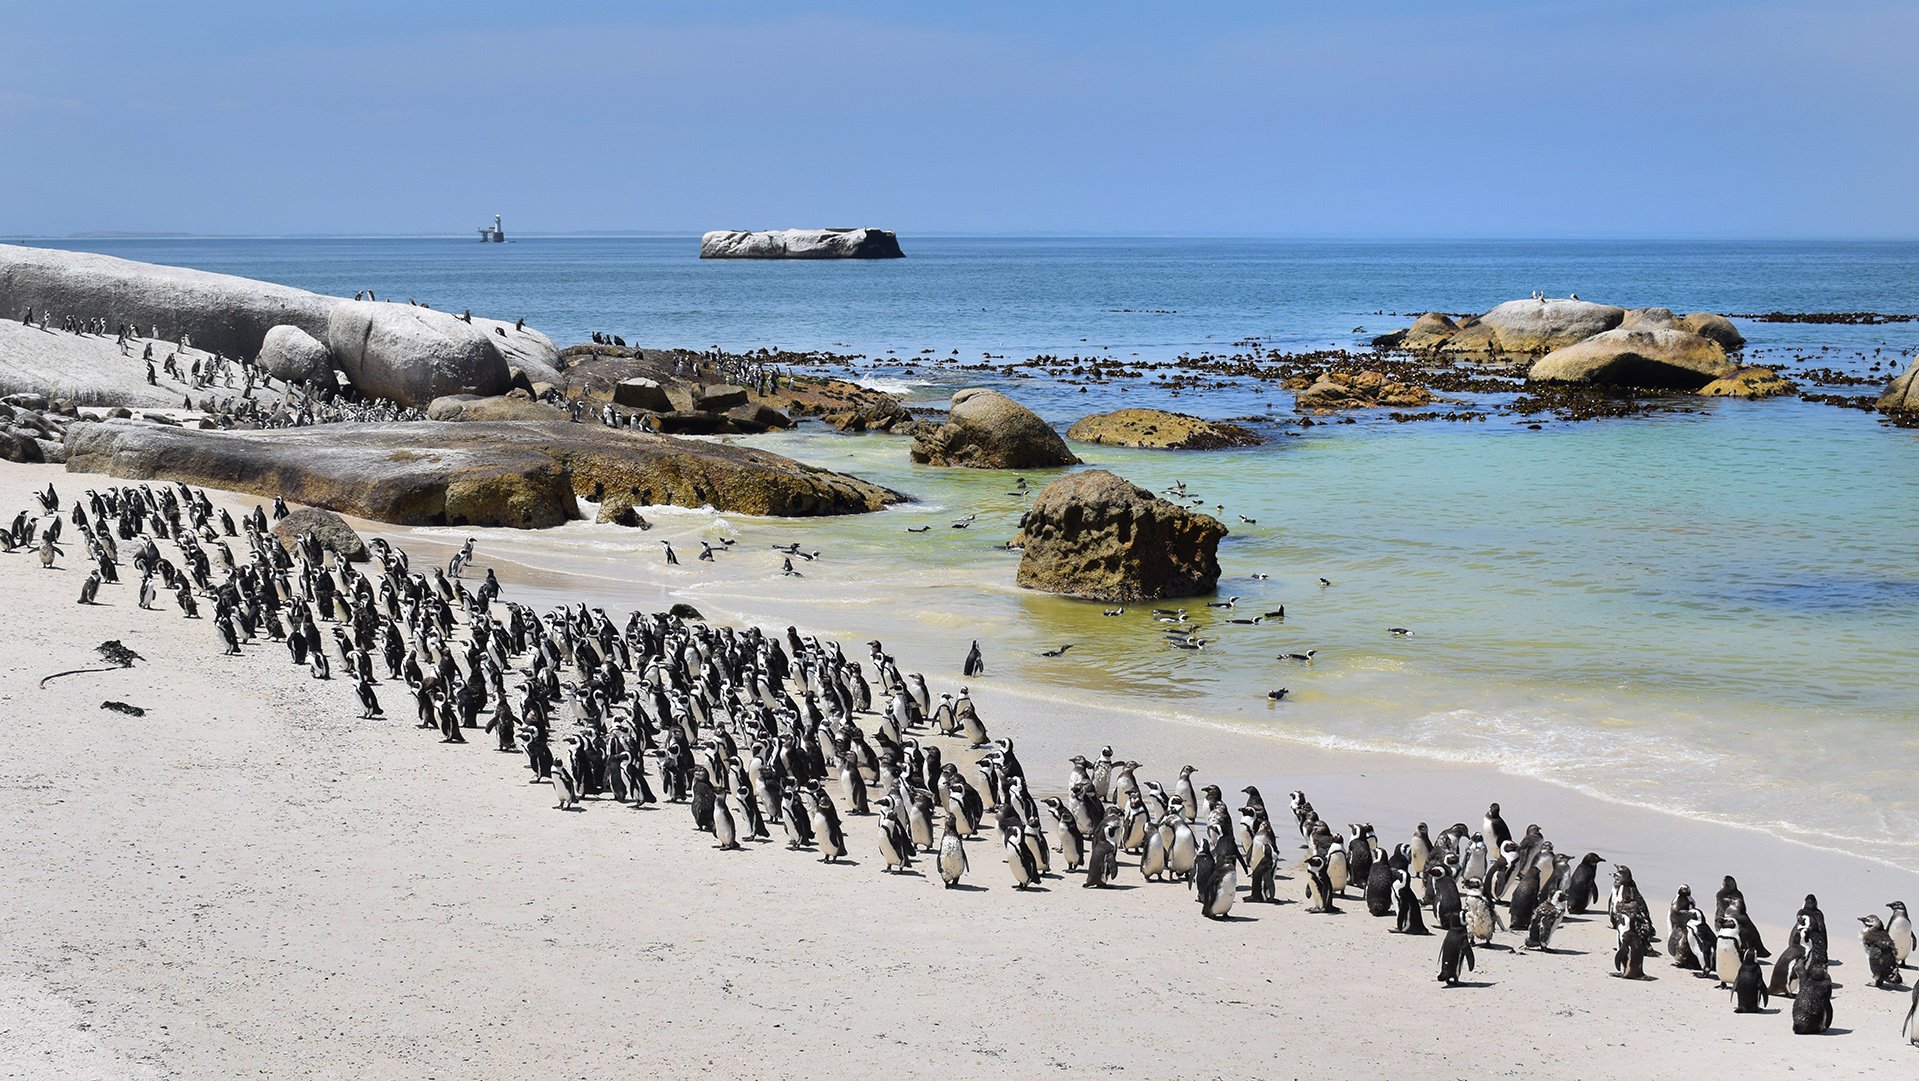 Glans Krijgsgevangene uitstulping De Afrikaanse pinguïn: terug naar zijn kolonie -